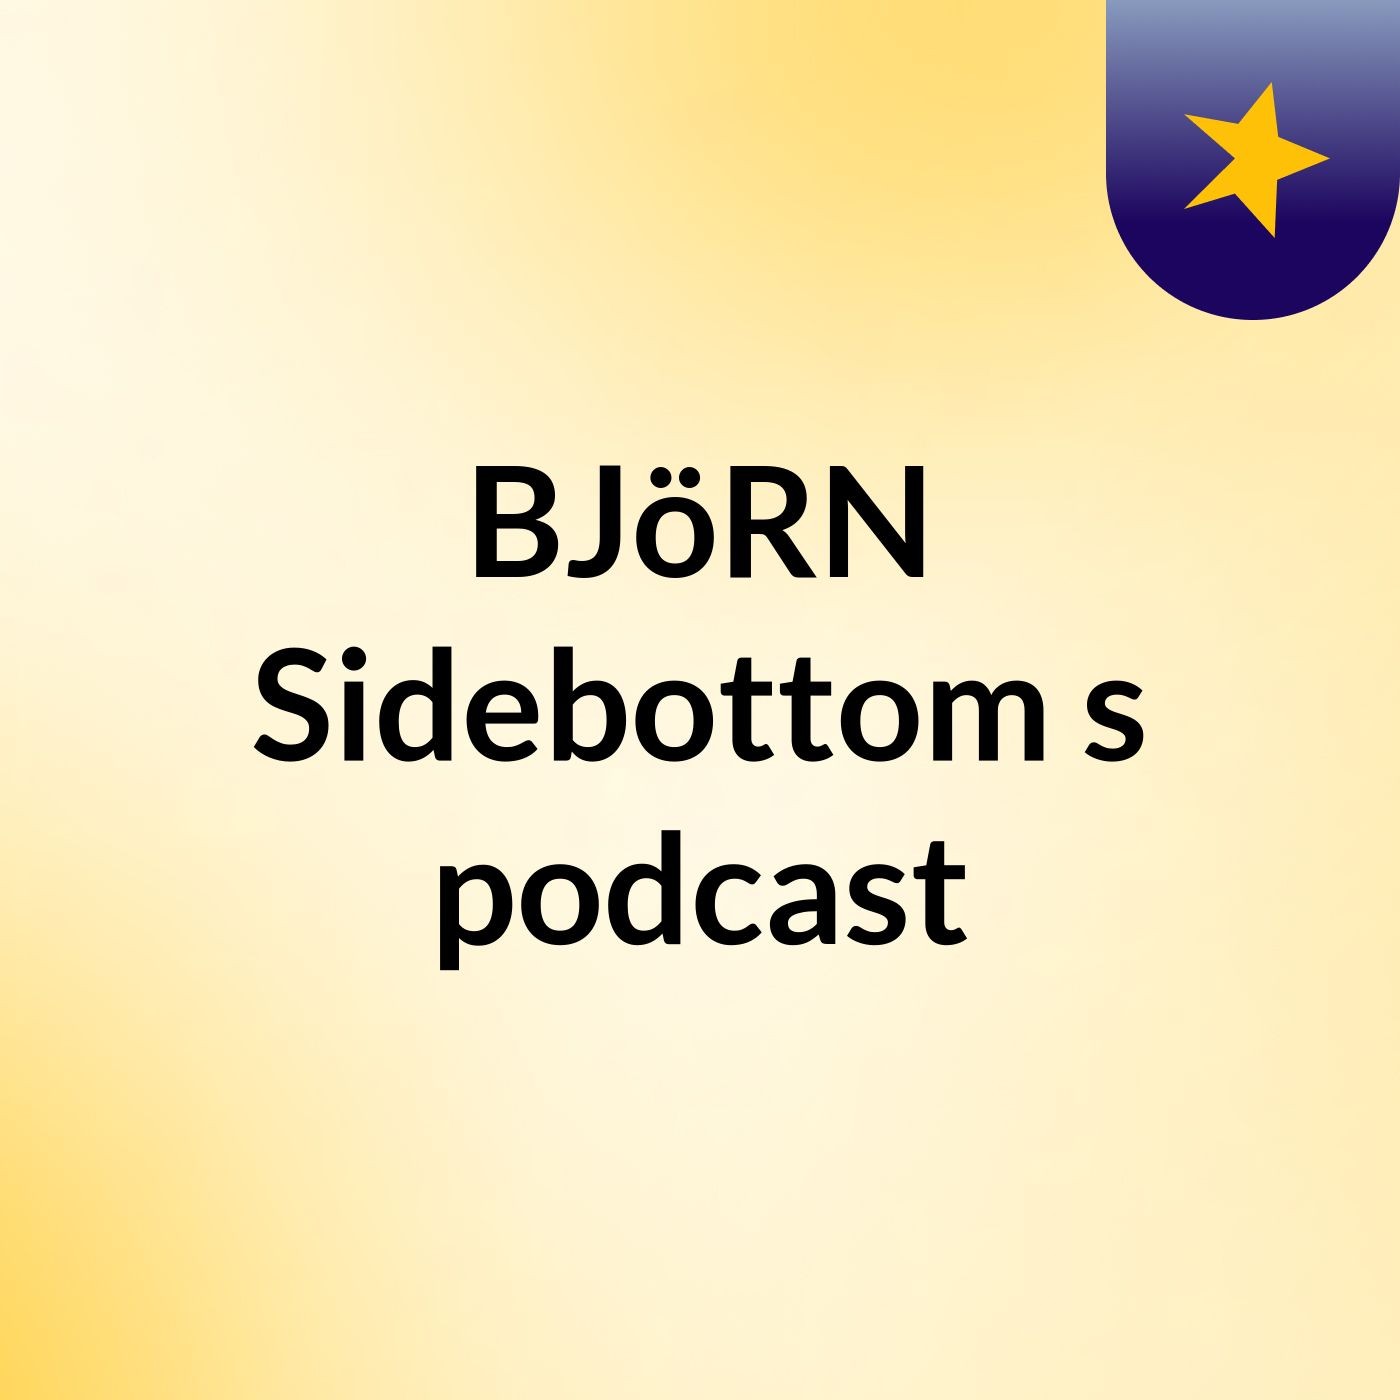 Episode 2 - BJöRN Sidebottom's podcast